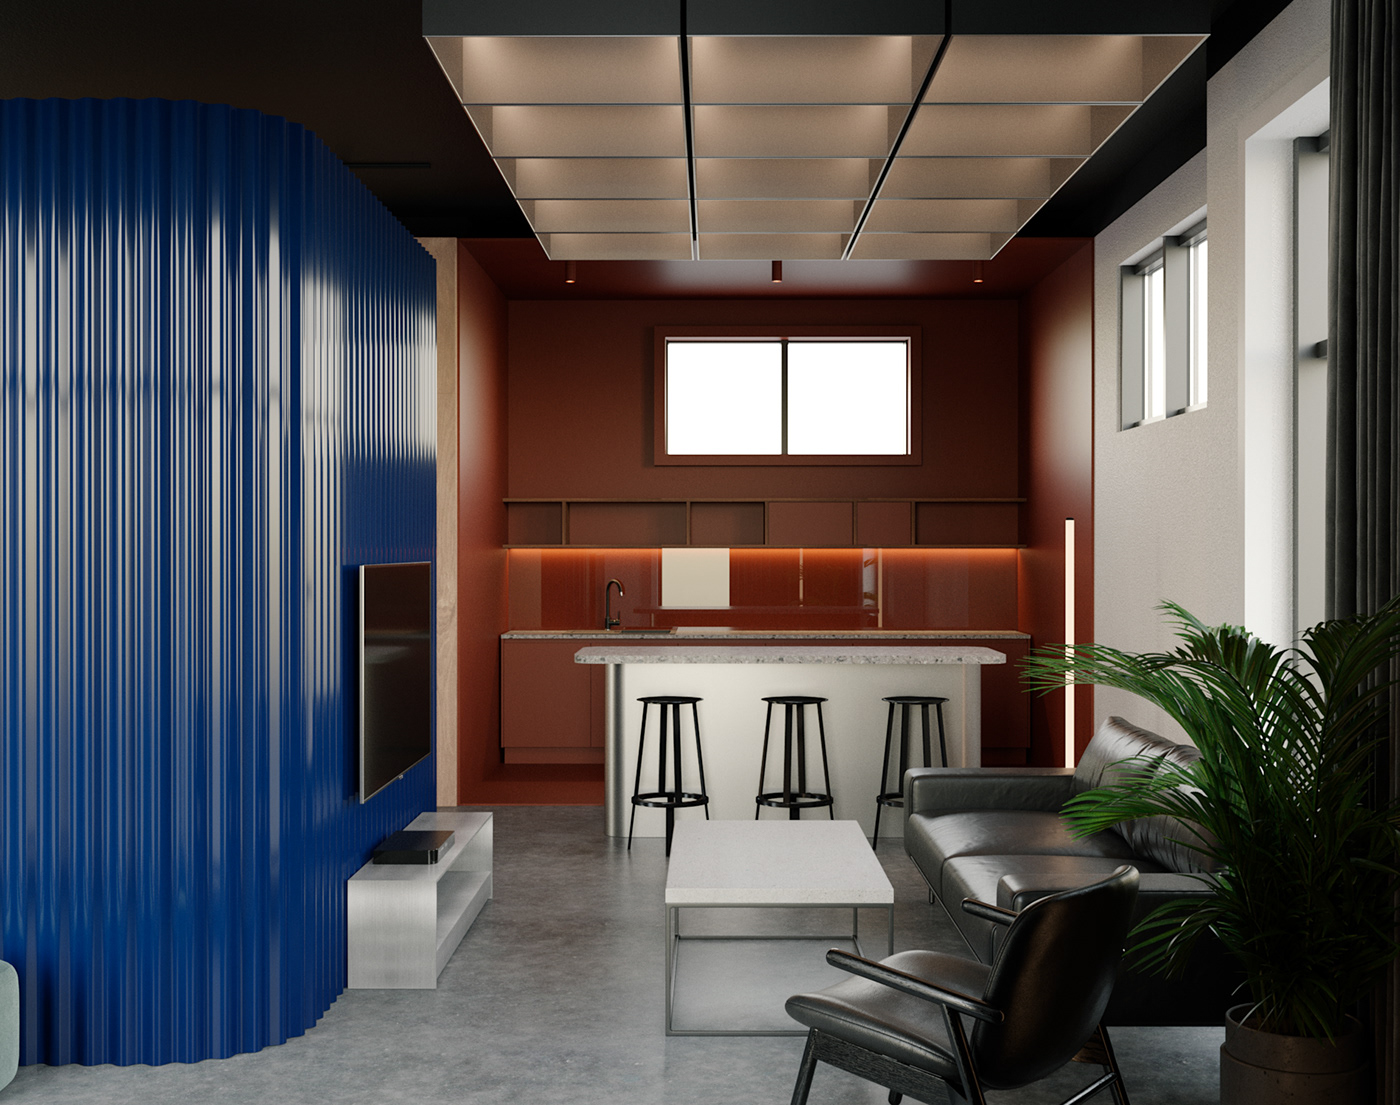 Creative office design interior render MODERN OFFICE INTERIOR Office Design Office interior design Office visualazation